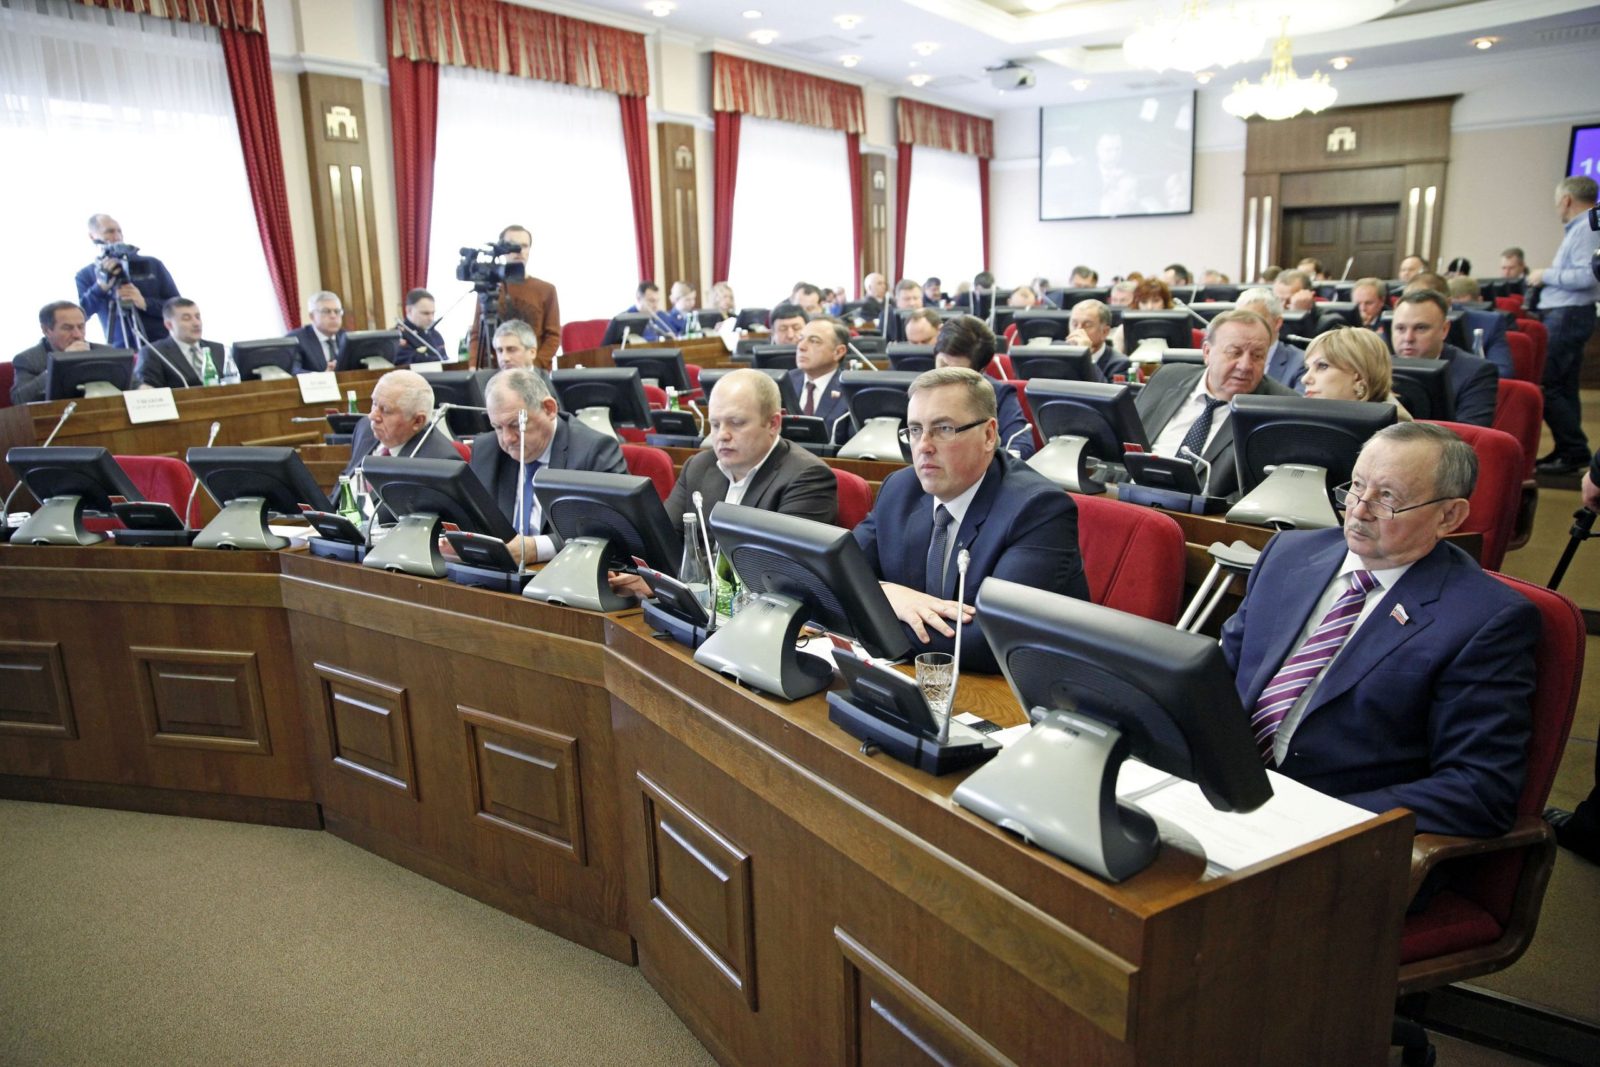 Правительство ставропольского края состав с фото и фамилией